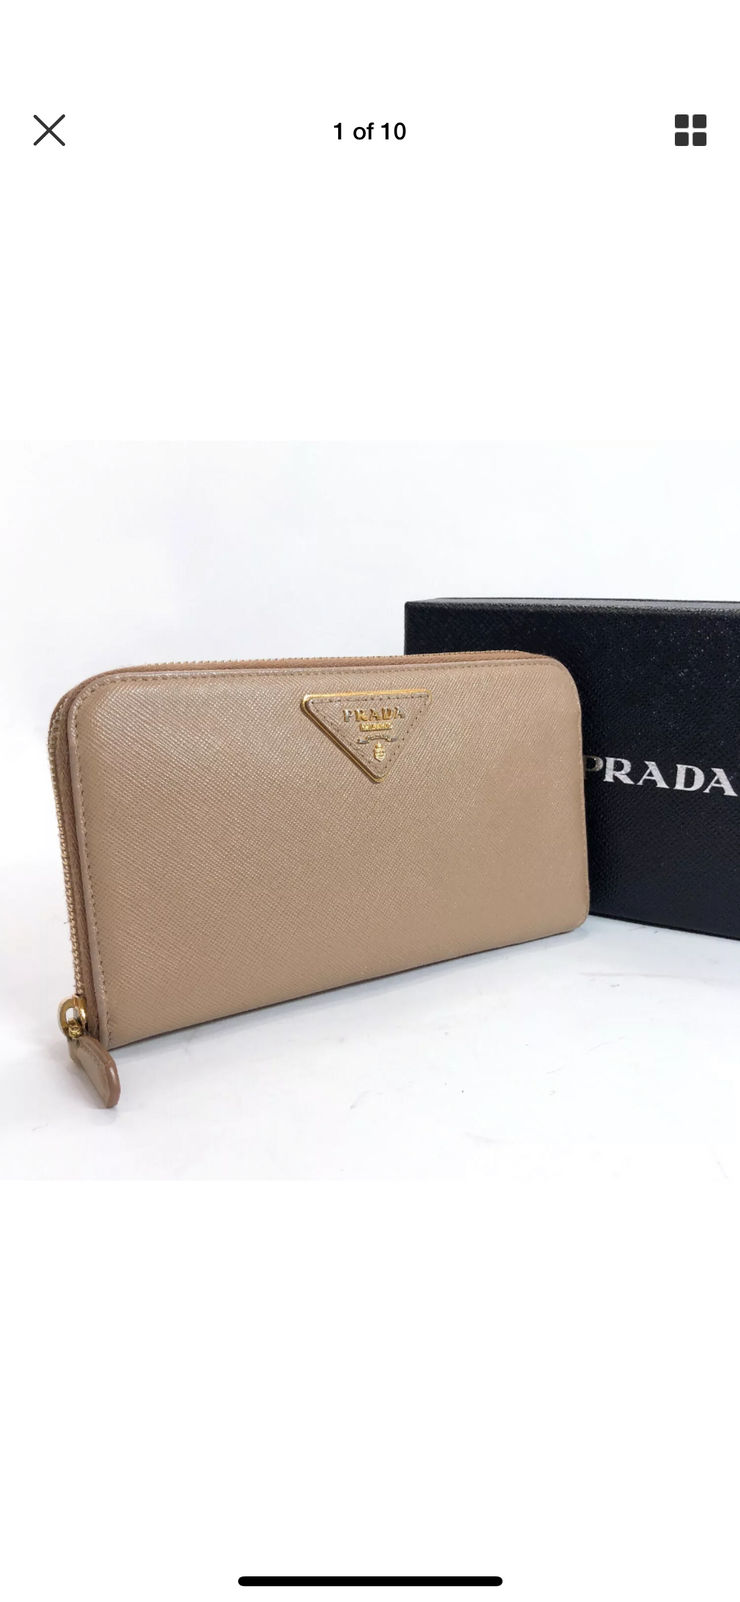 Prada nude Vitello wallet with gold hardware